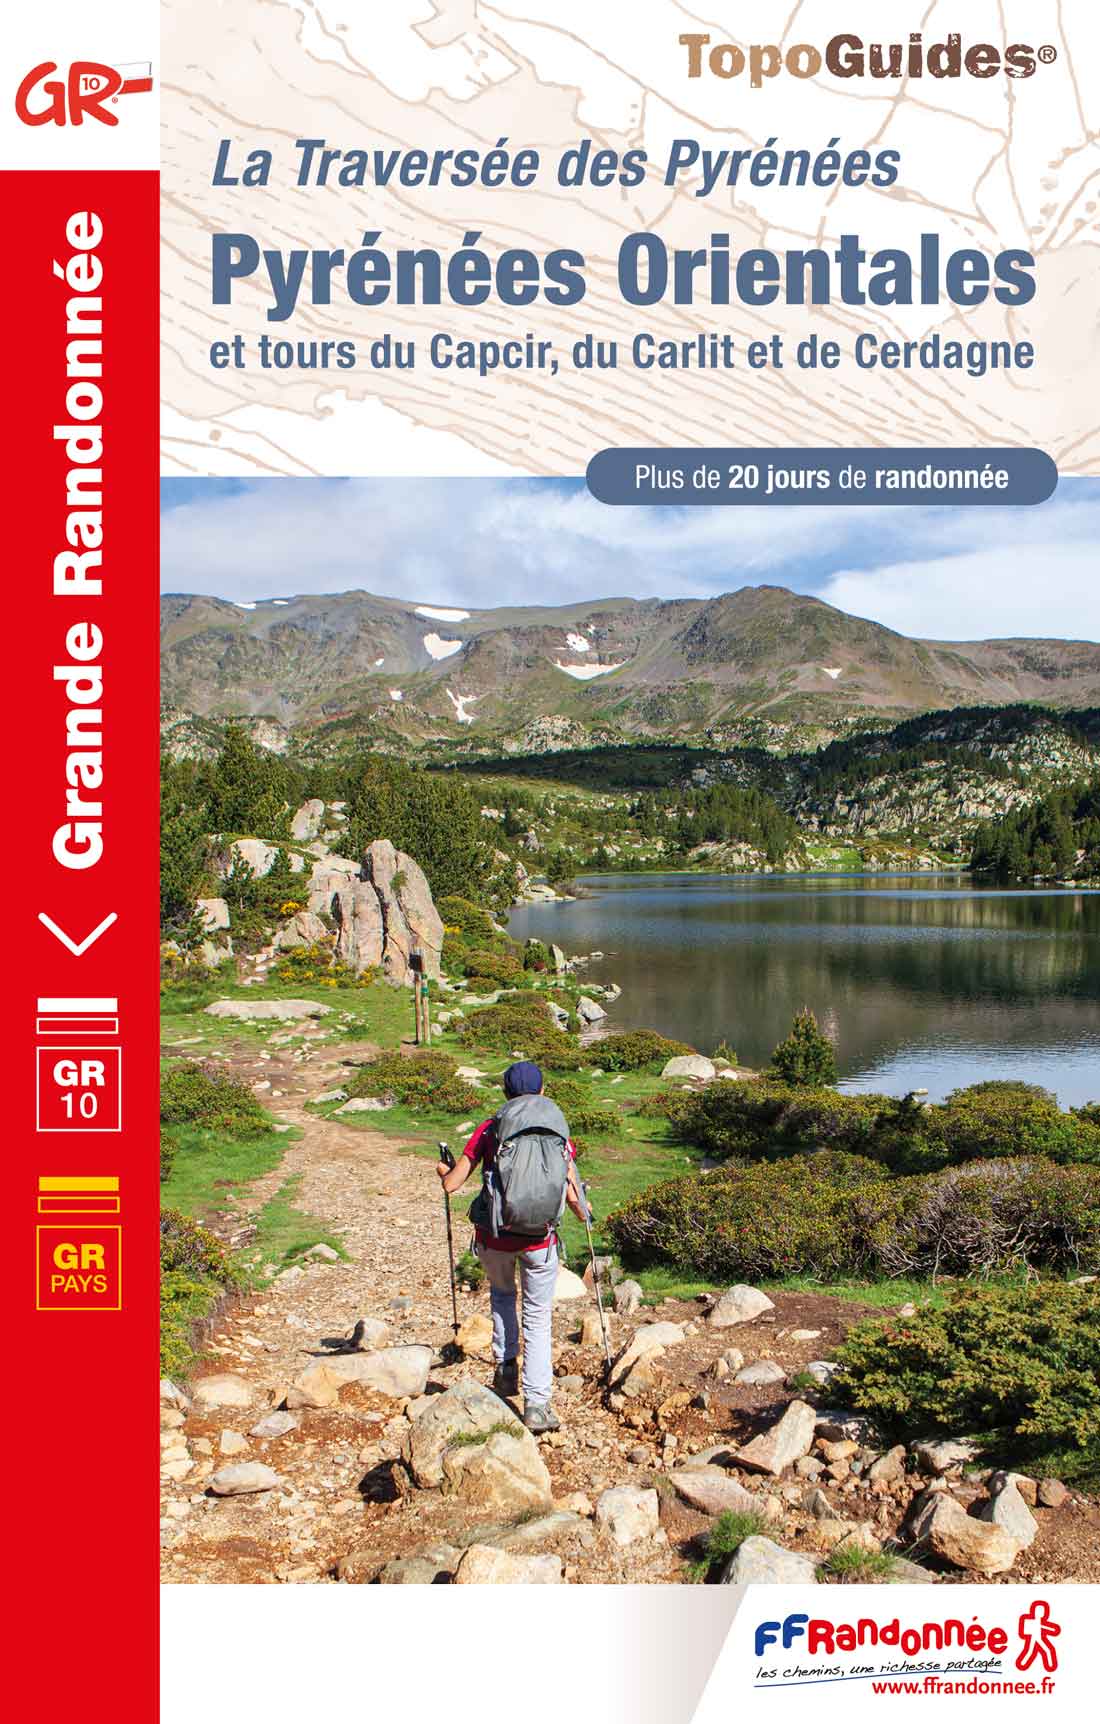 GR10 : Pyrénées Orientales, GRP du Capcir, du Carlit et de Cerdagne, de Mérens-les-Vals à Banyuls-sur-Mer